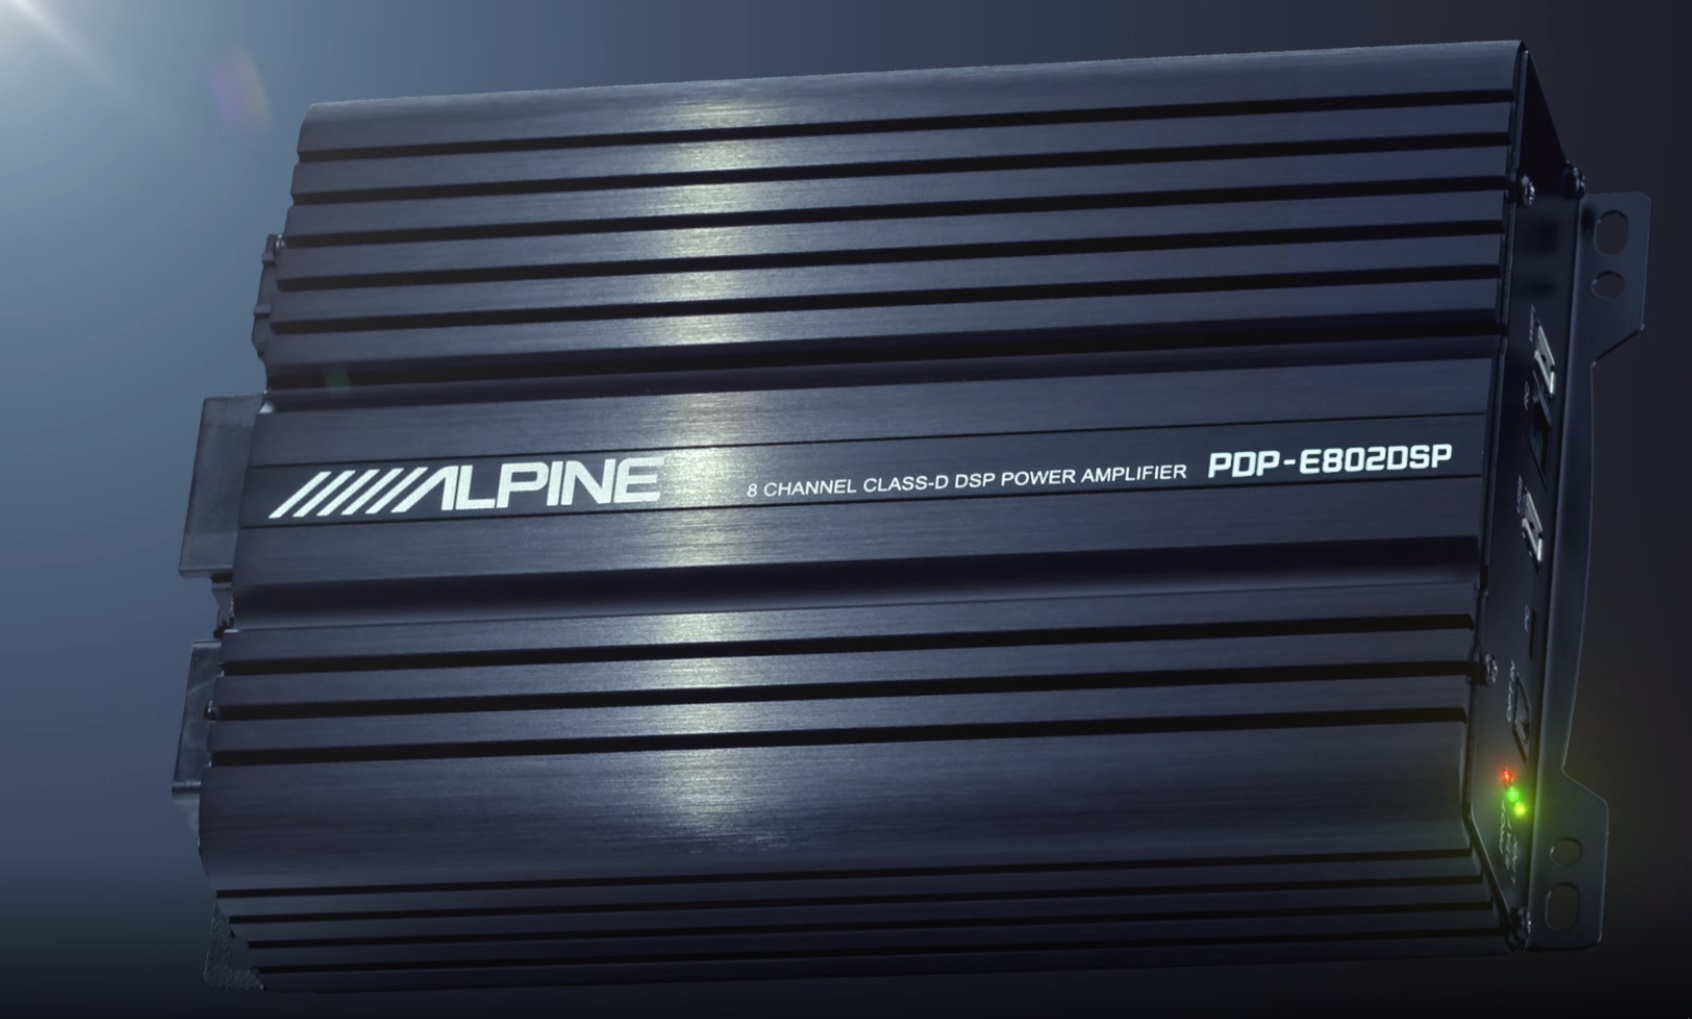 Alpine PDP-E802DSP DIGITALER 8 KANAL DSP VERSTÄRKER 8 x 100 WATT RMS